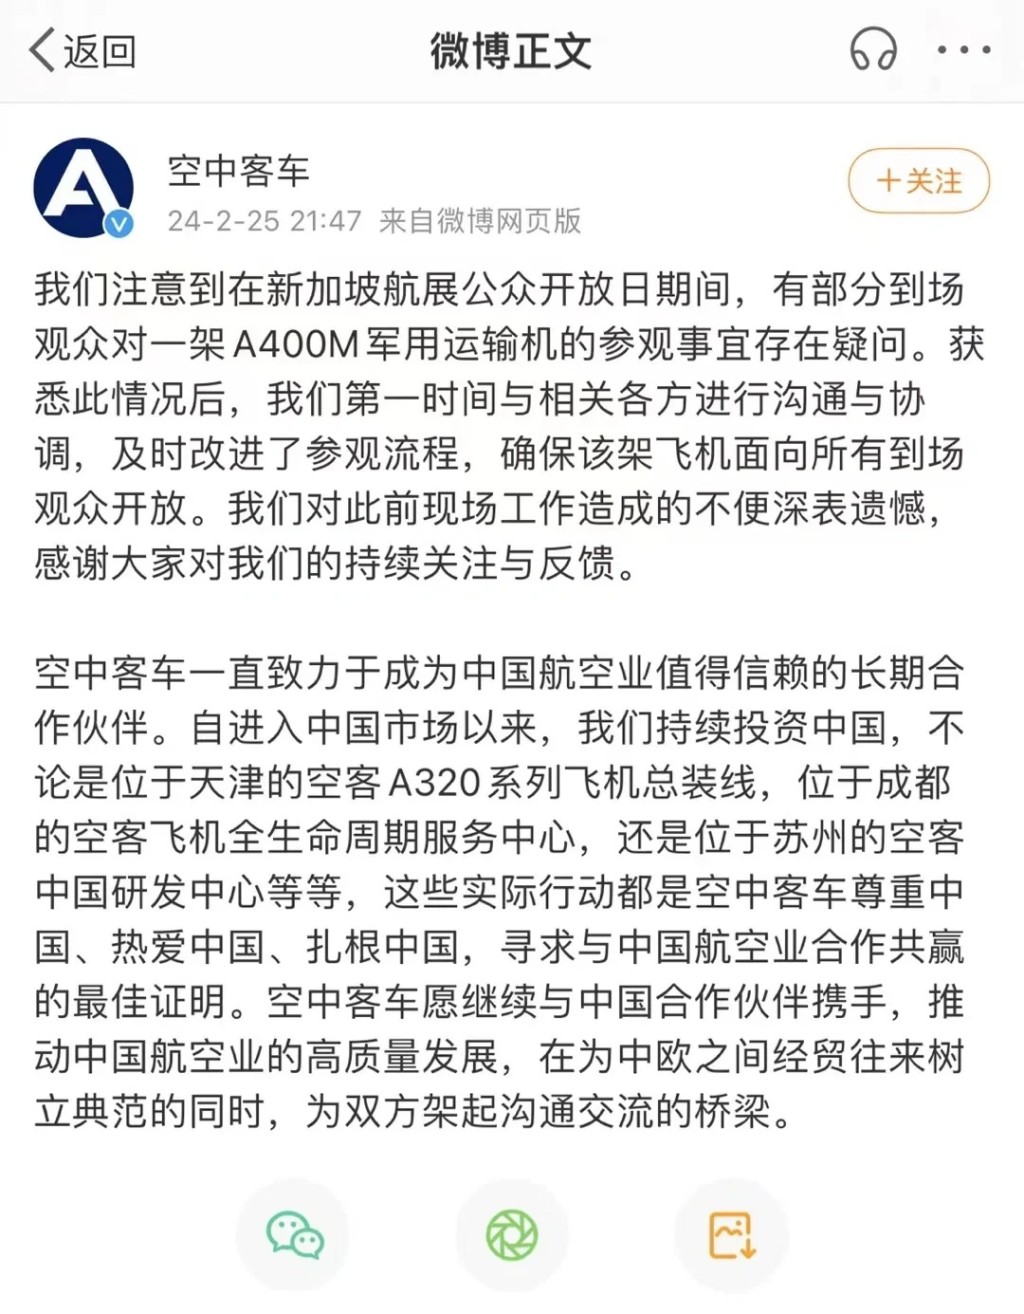 有中國網民投訴被阻止參觀德國空軍的A400M運輸機。小紅書